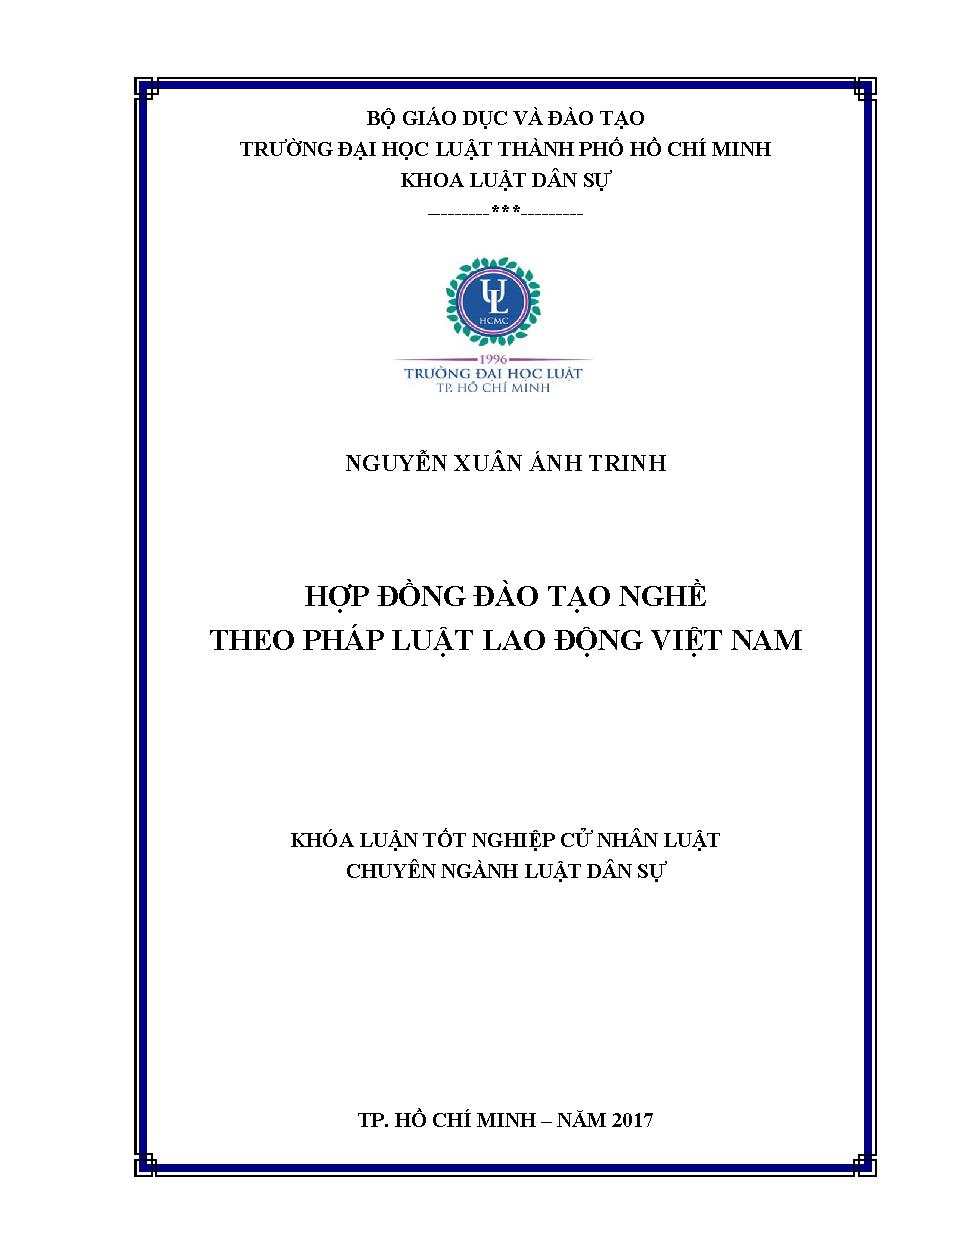 Hợp đồng đào tạo nghề theo pháp luật lao động Việt Nam